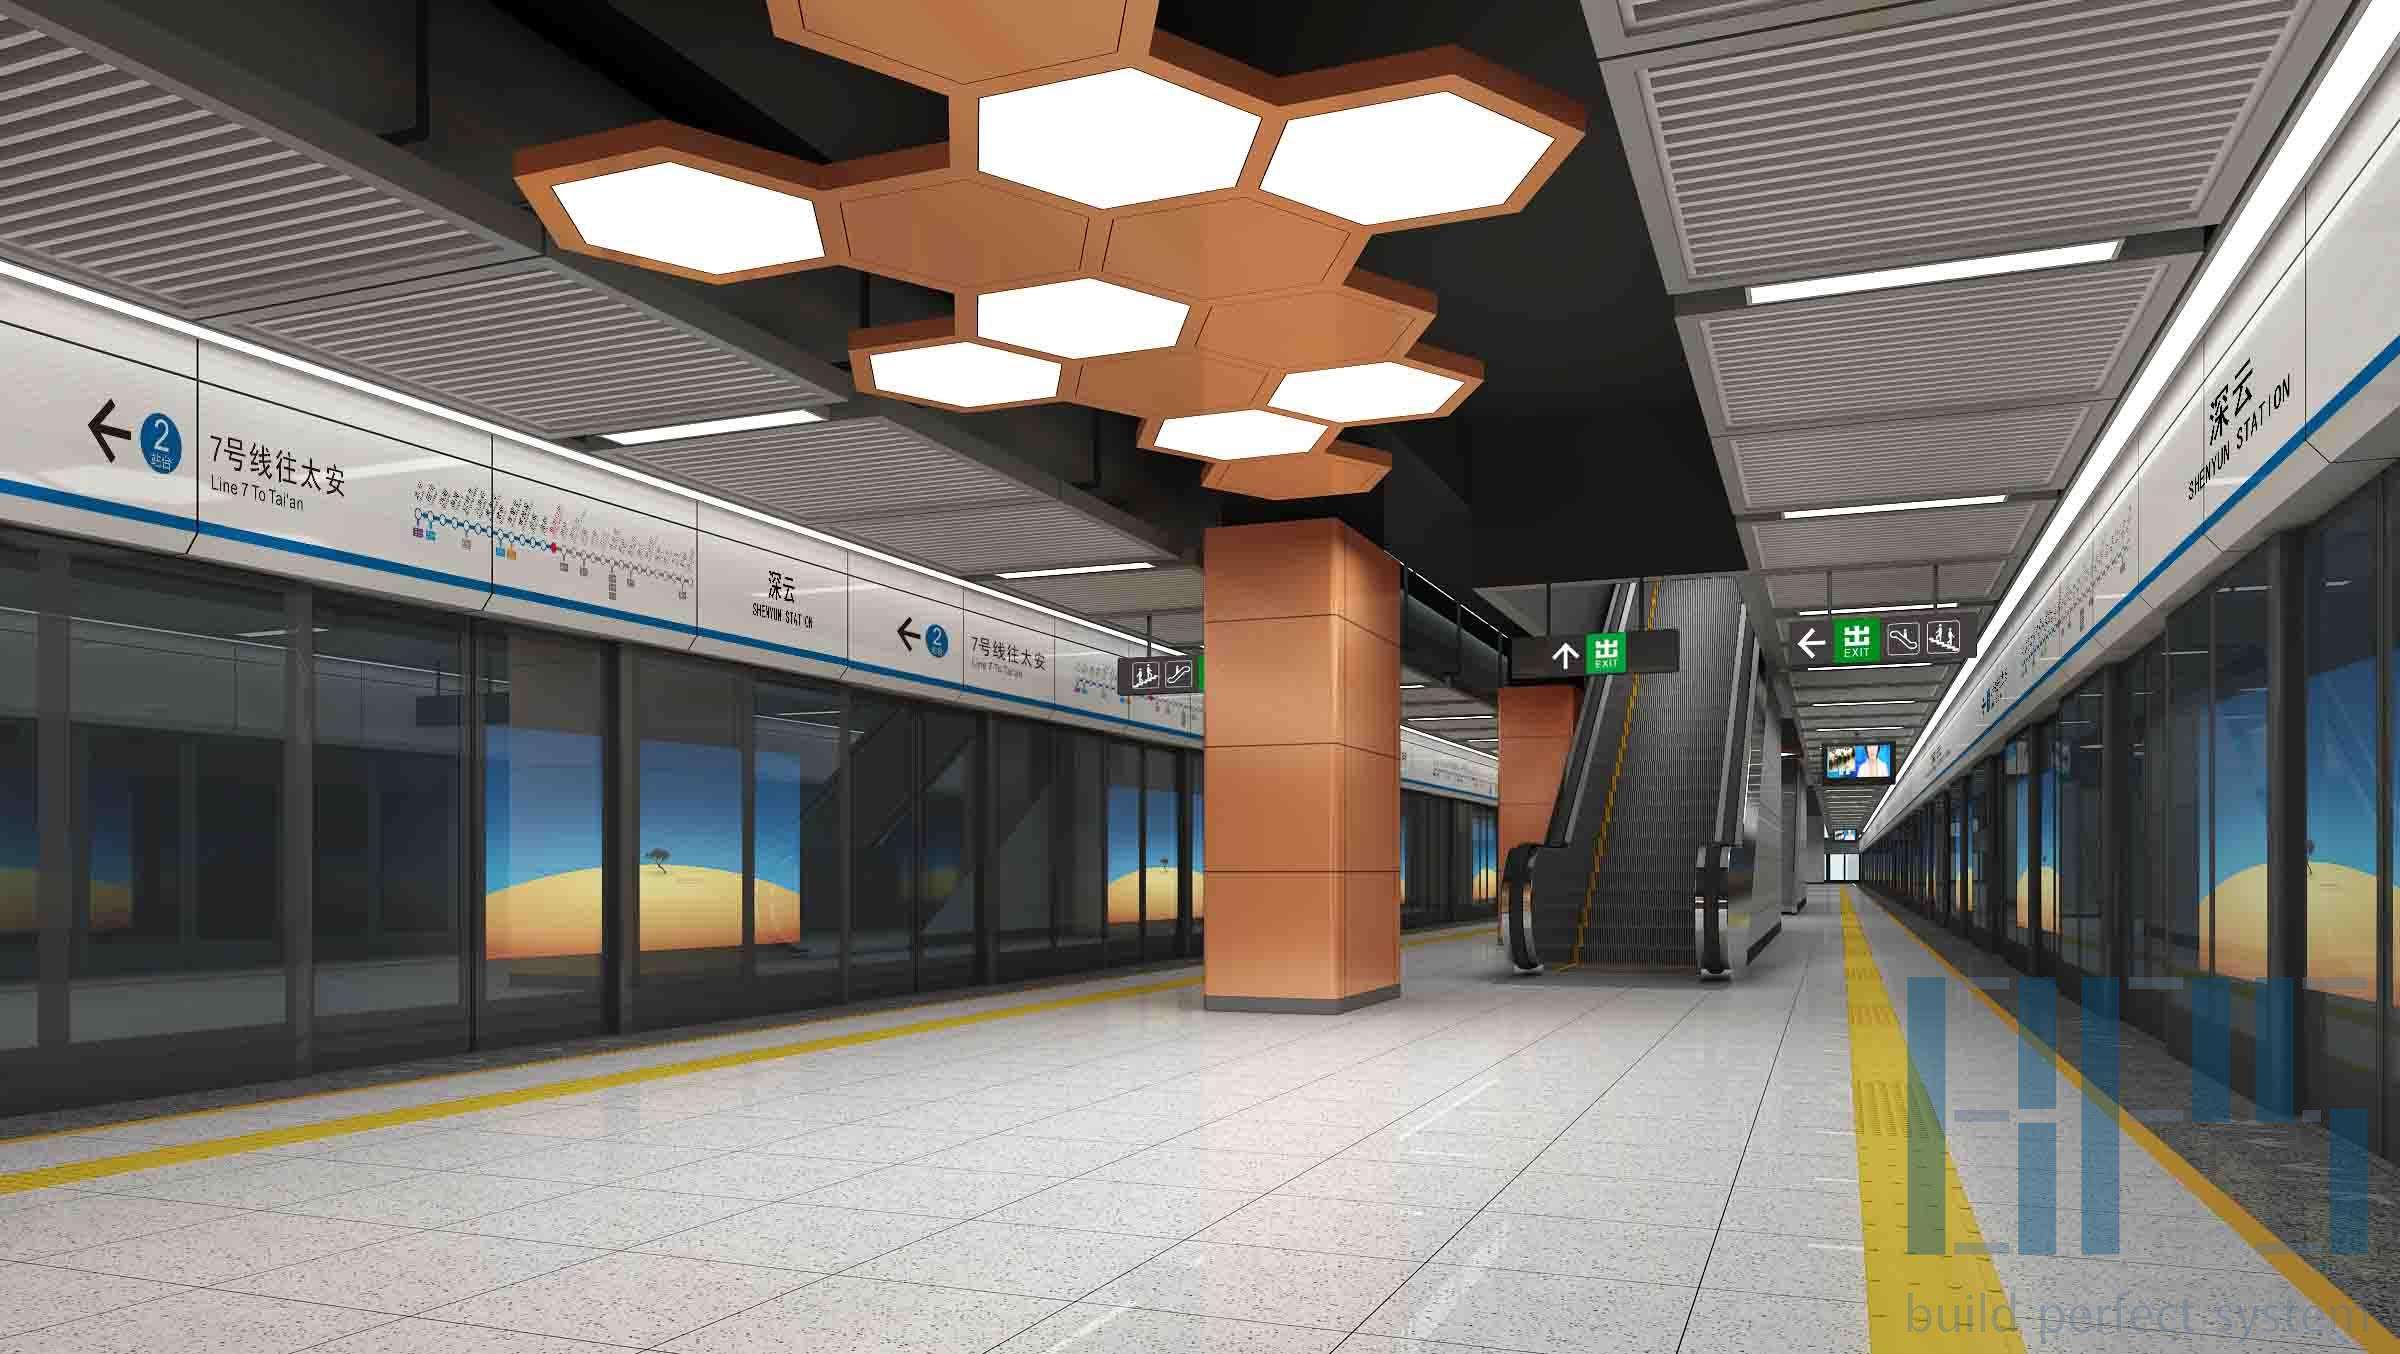 地铁内部空间的艺术照明设计